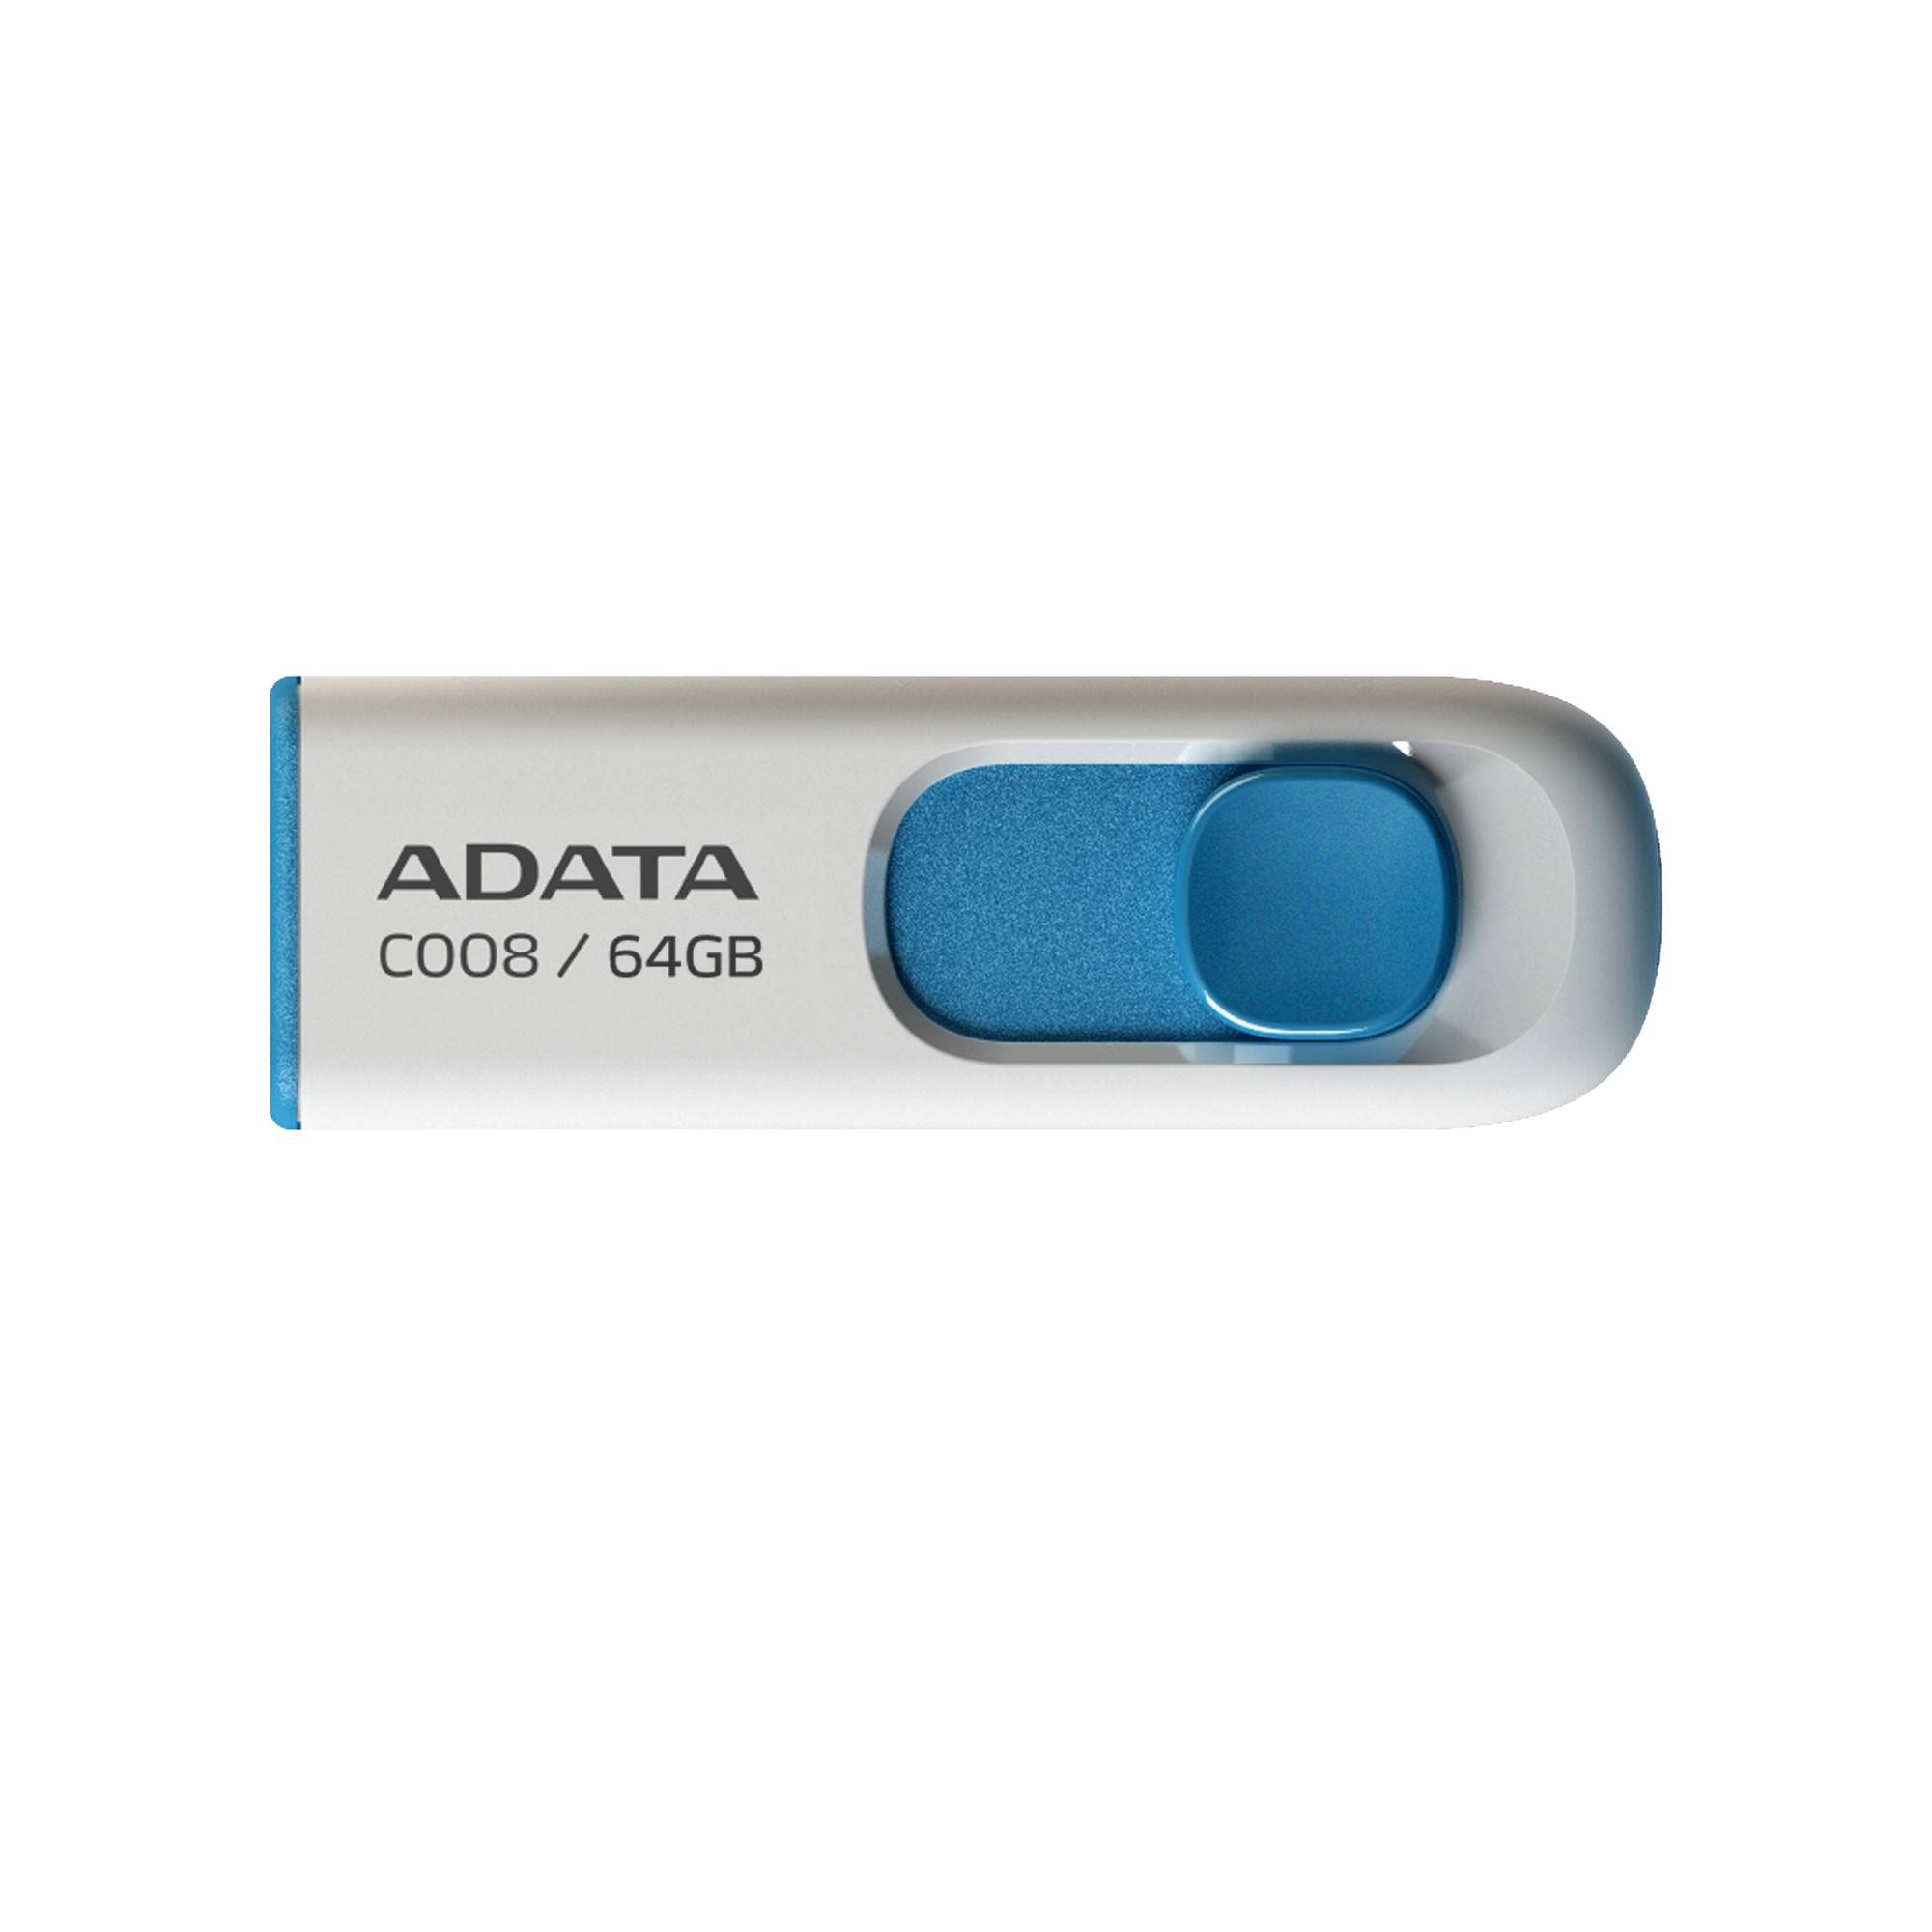 Memoria USB ADATA C008 - Azul